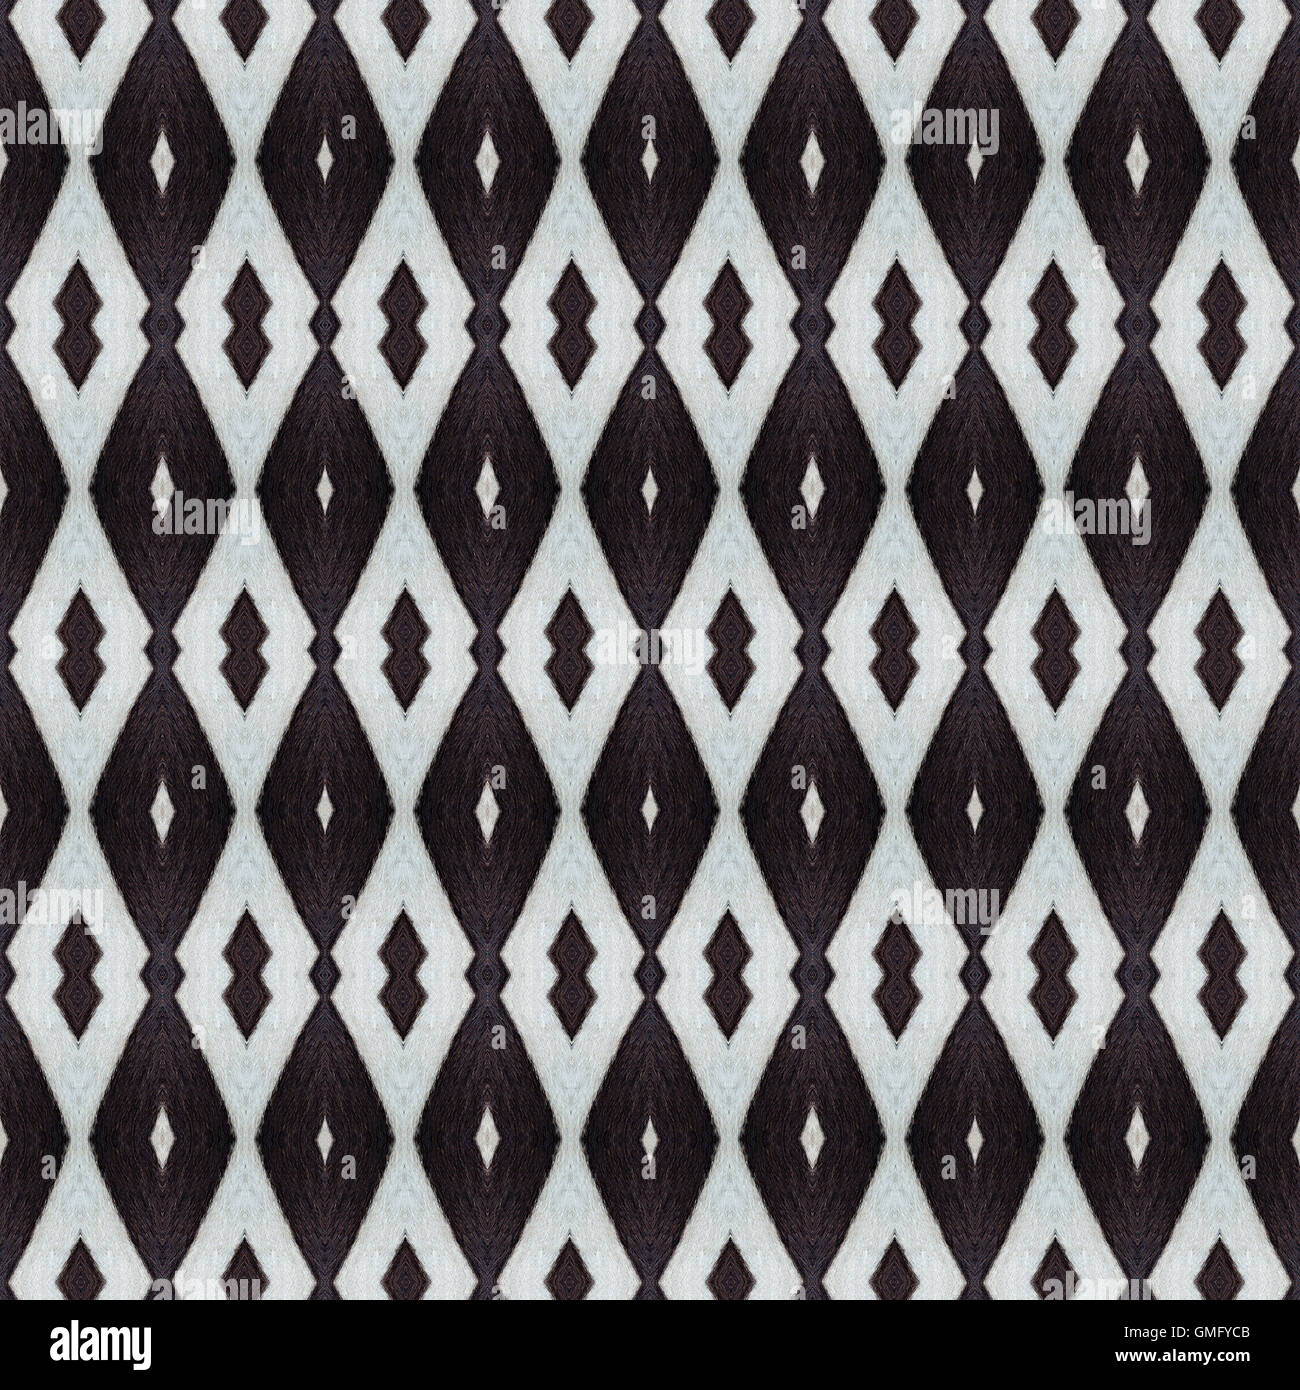 Animal, zebra seamless texture fond noir et blanc Banque D'Images